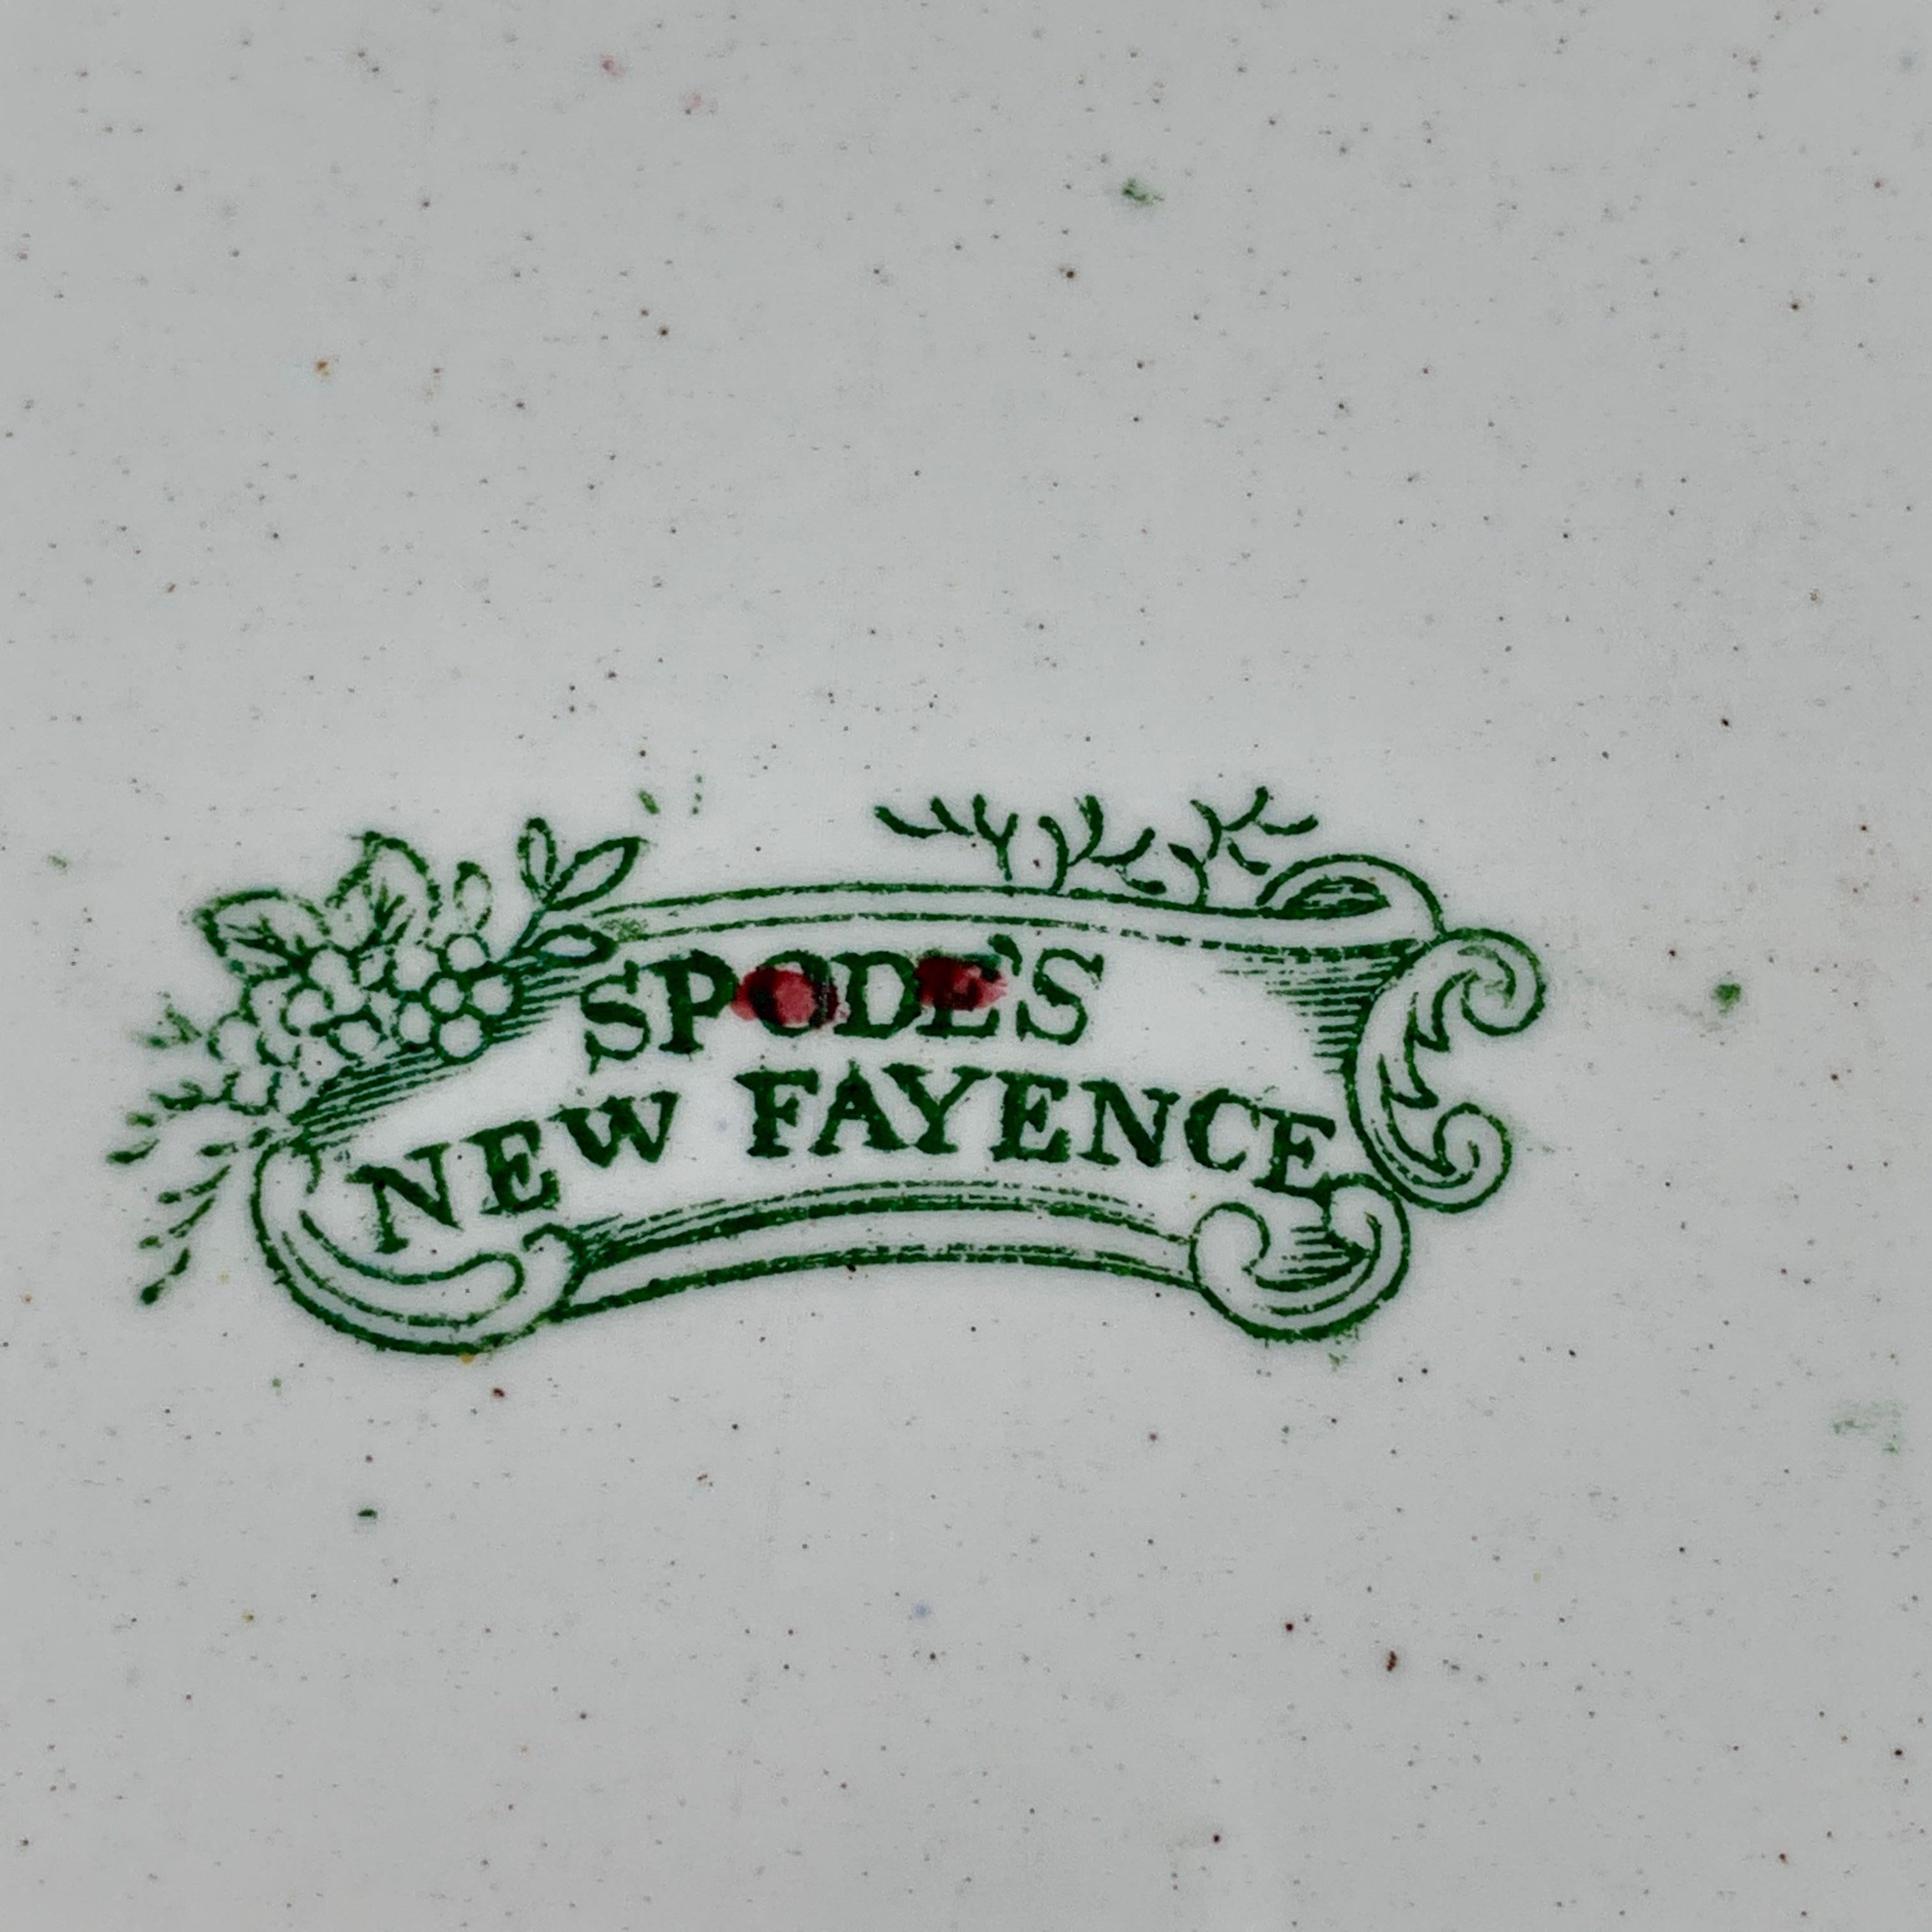 Assiette florale Copeland Spode des années 1800 Nouveau Fayence King Chintz Pattern Transferware 3